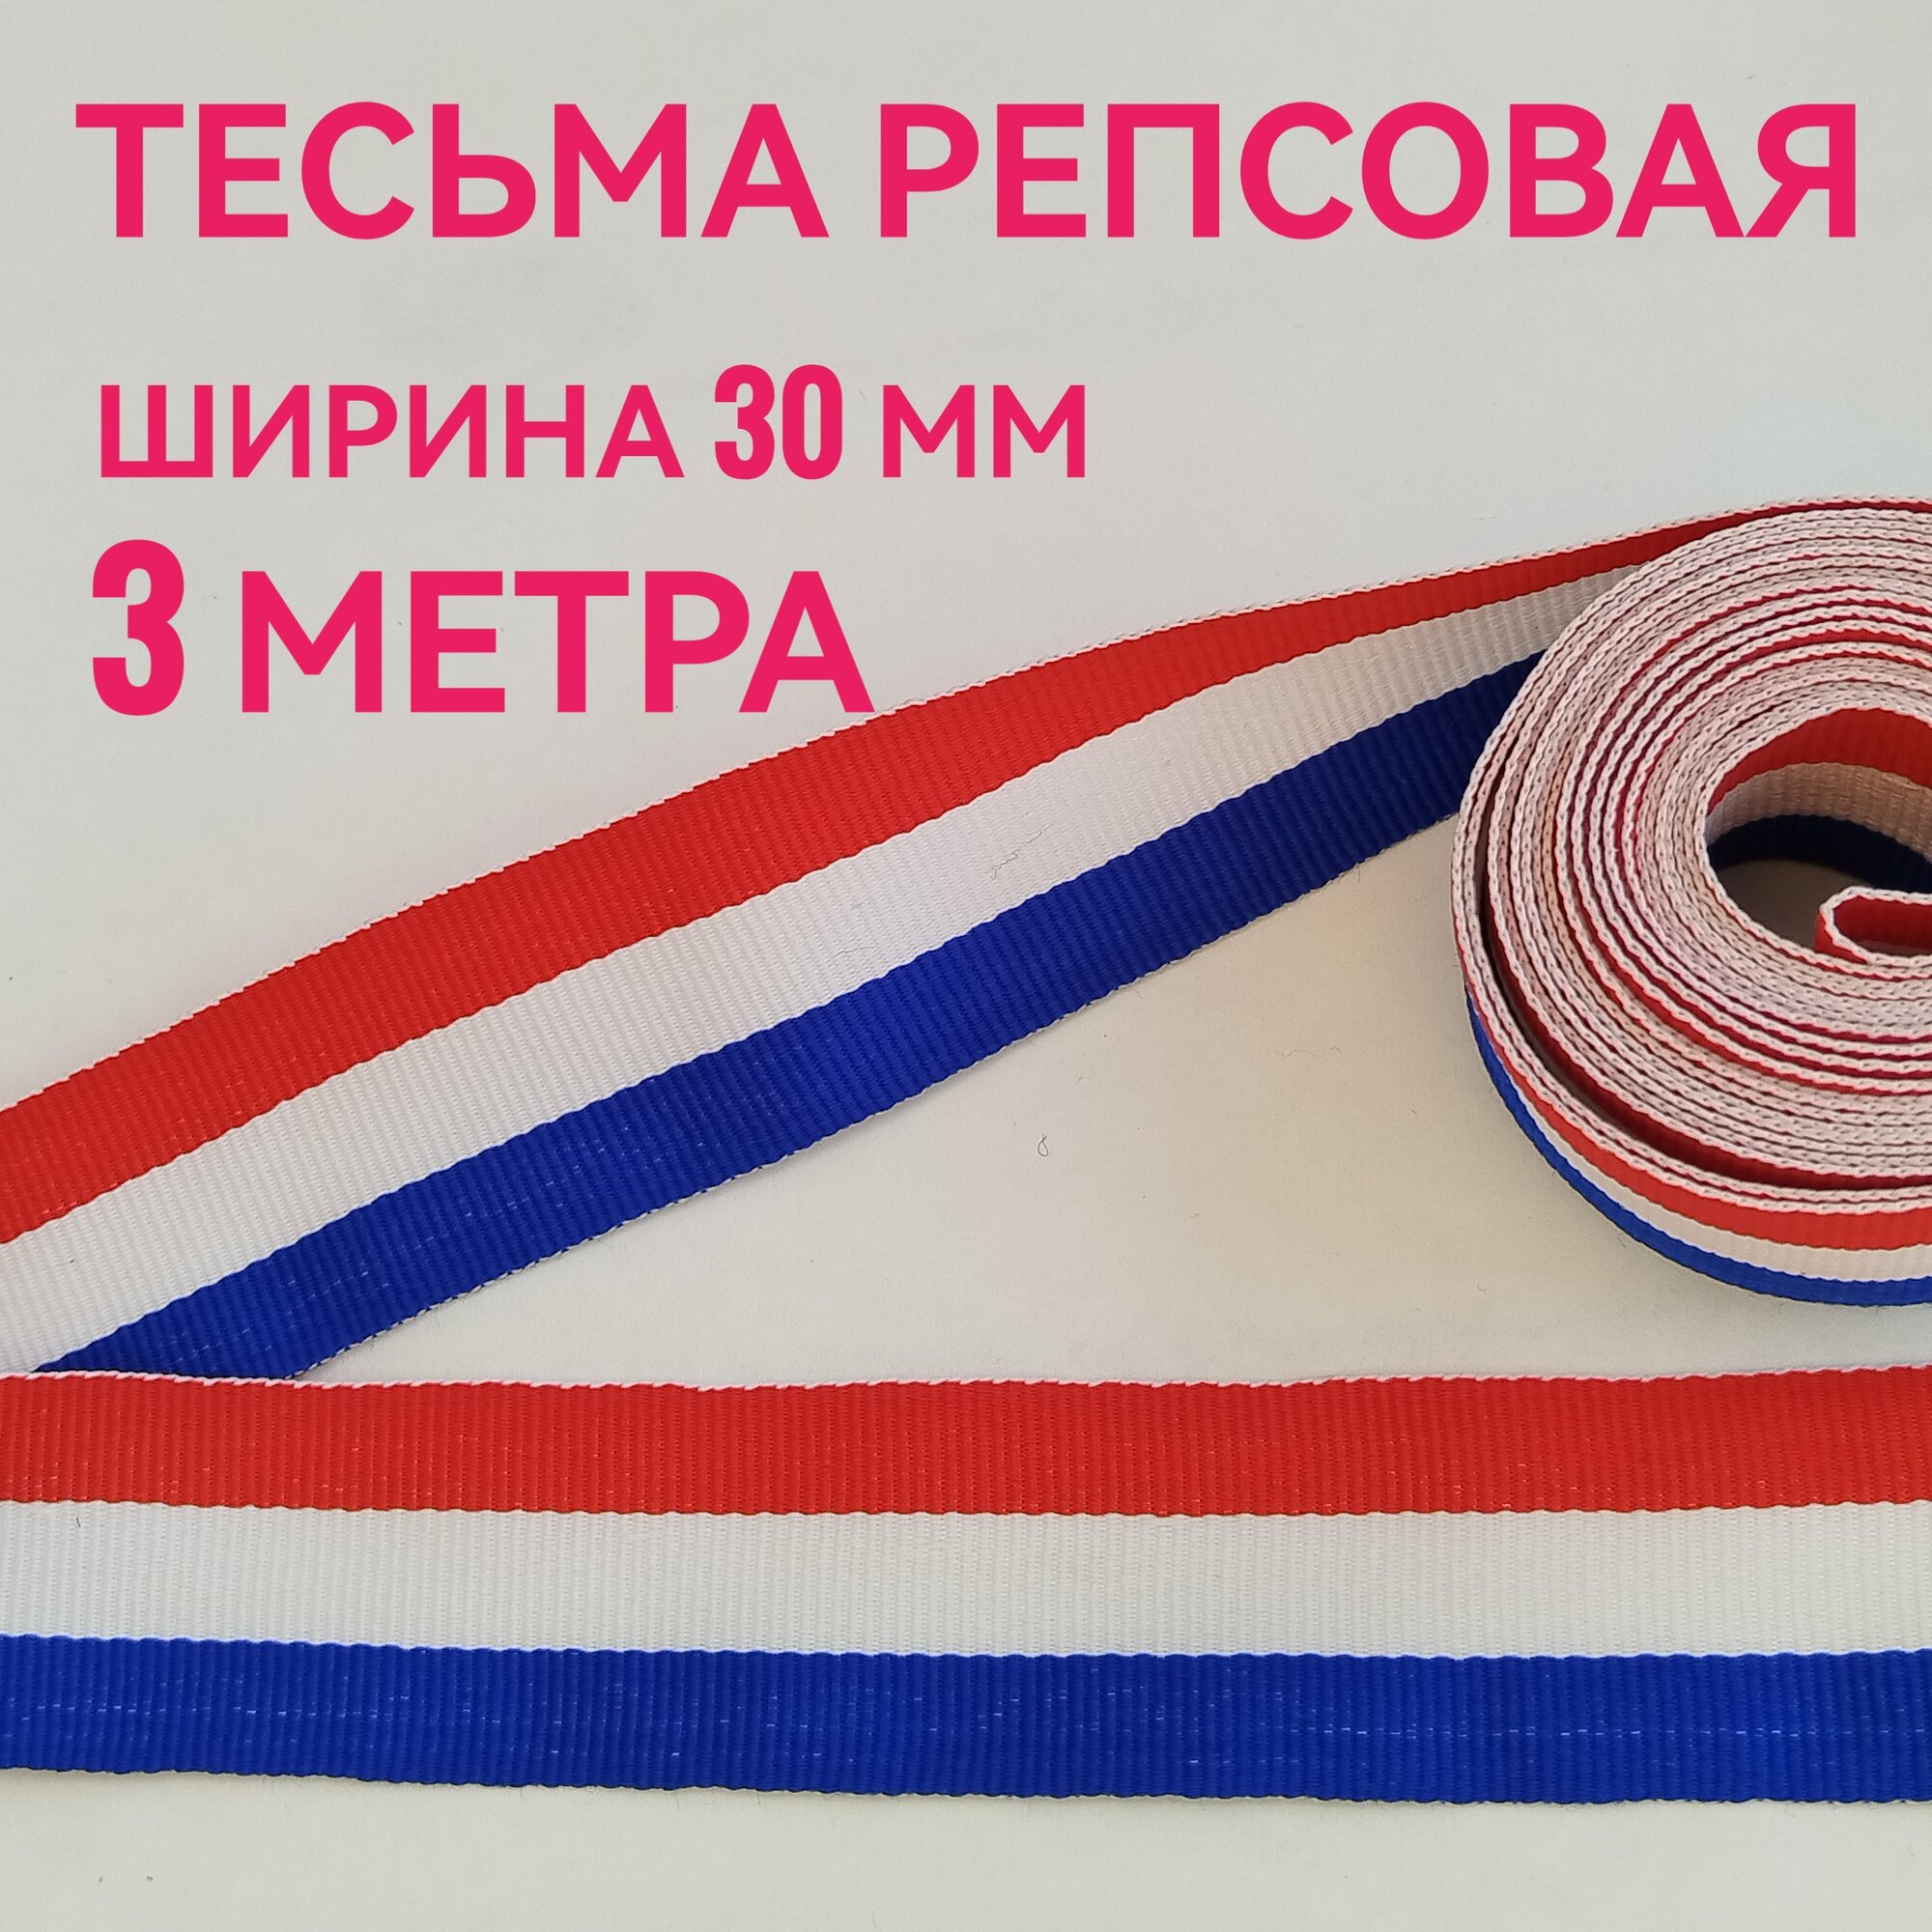 Тесьма /лента репсовая для шитья в полоску ш.30 мм, в упаковке 3 м, для шитья, творчества, рукоделия.